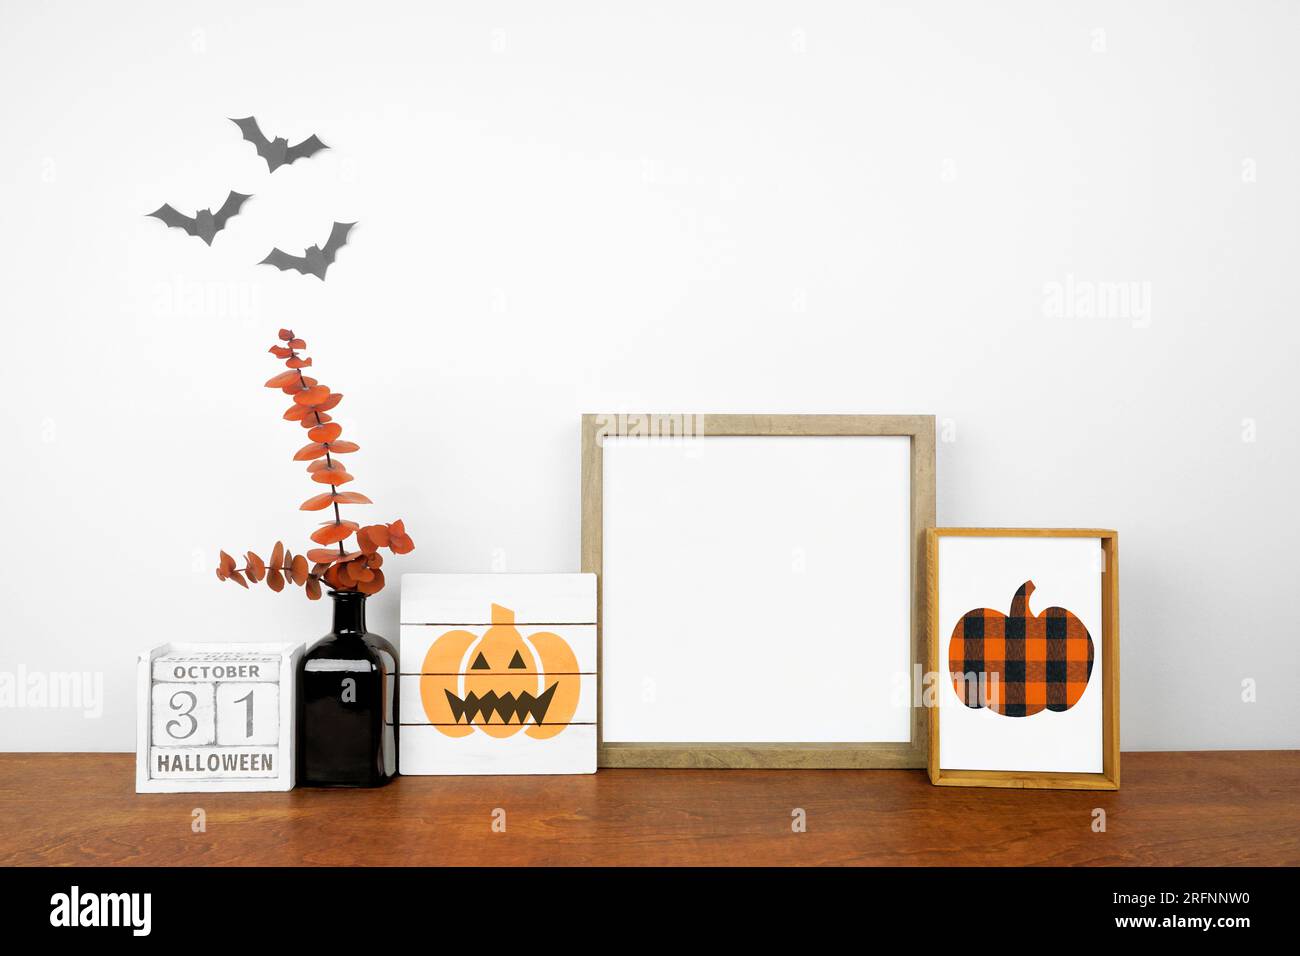 Maquette d'Halloween. Panneaux en bois chics shabby, calendrier et décoration de branches orange sur une étagère en bois contre un mur blanc. Espace de copie. Banque D'Images